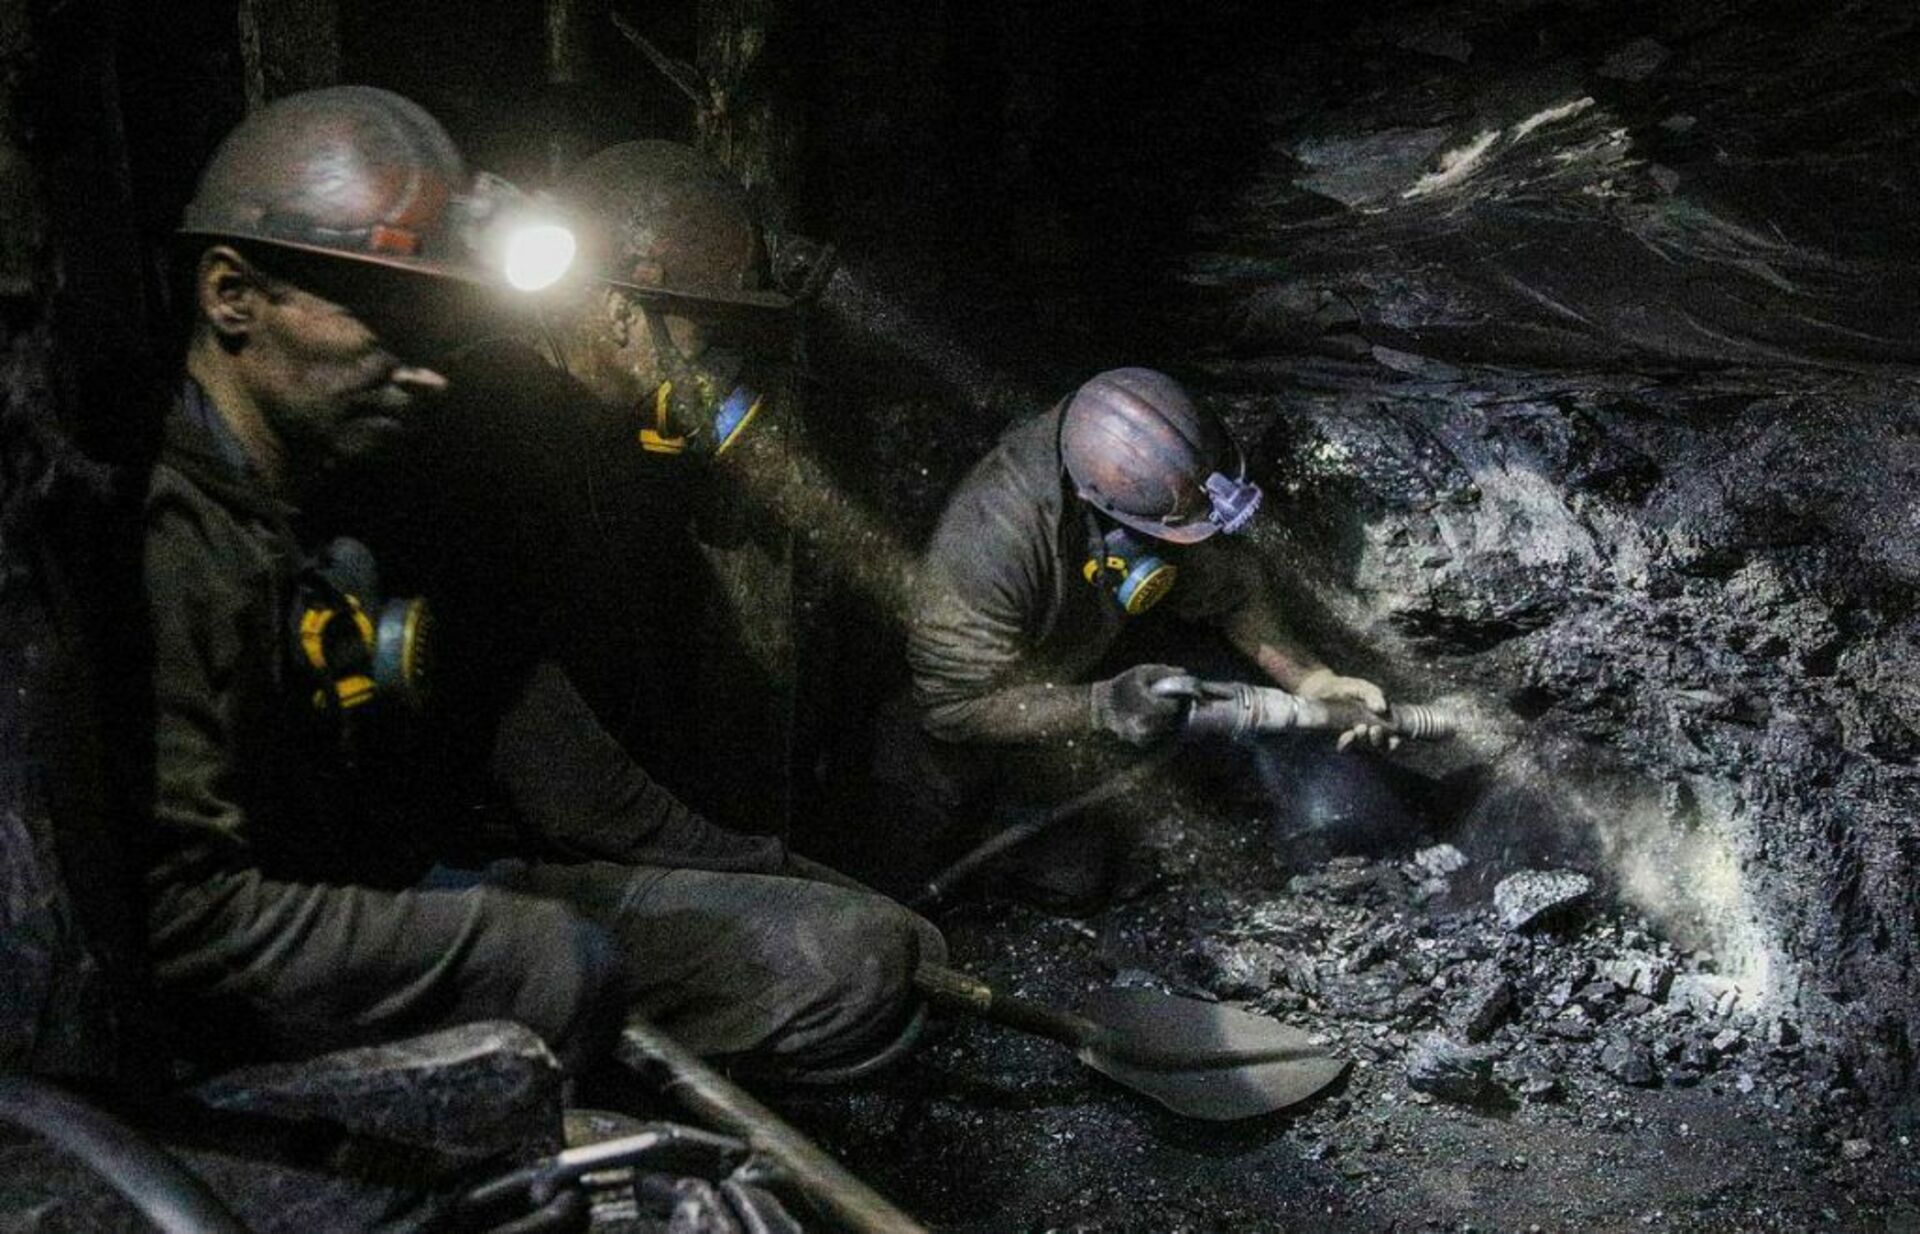 Работник угольной промышленности